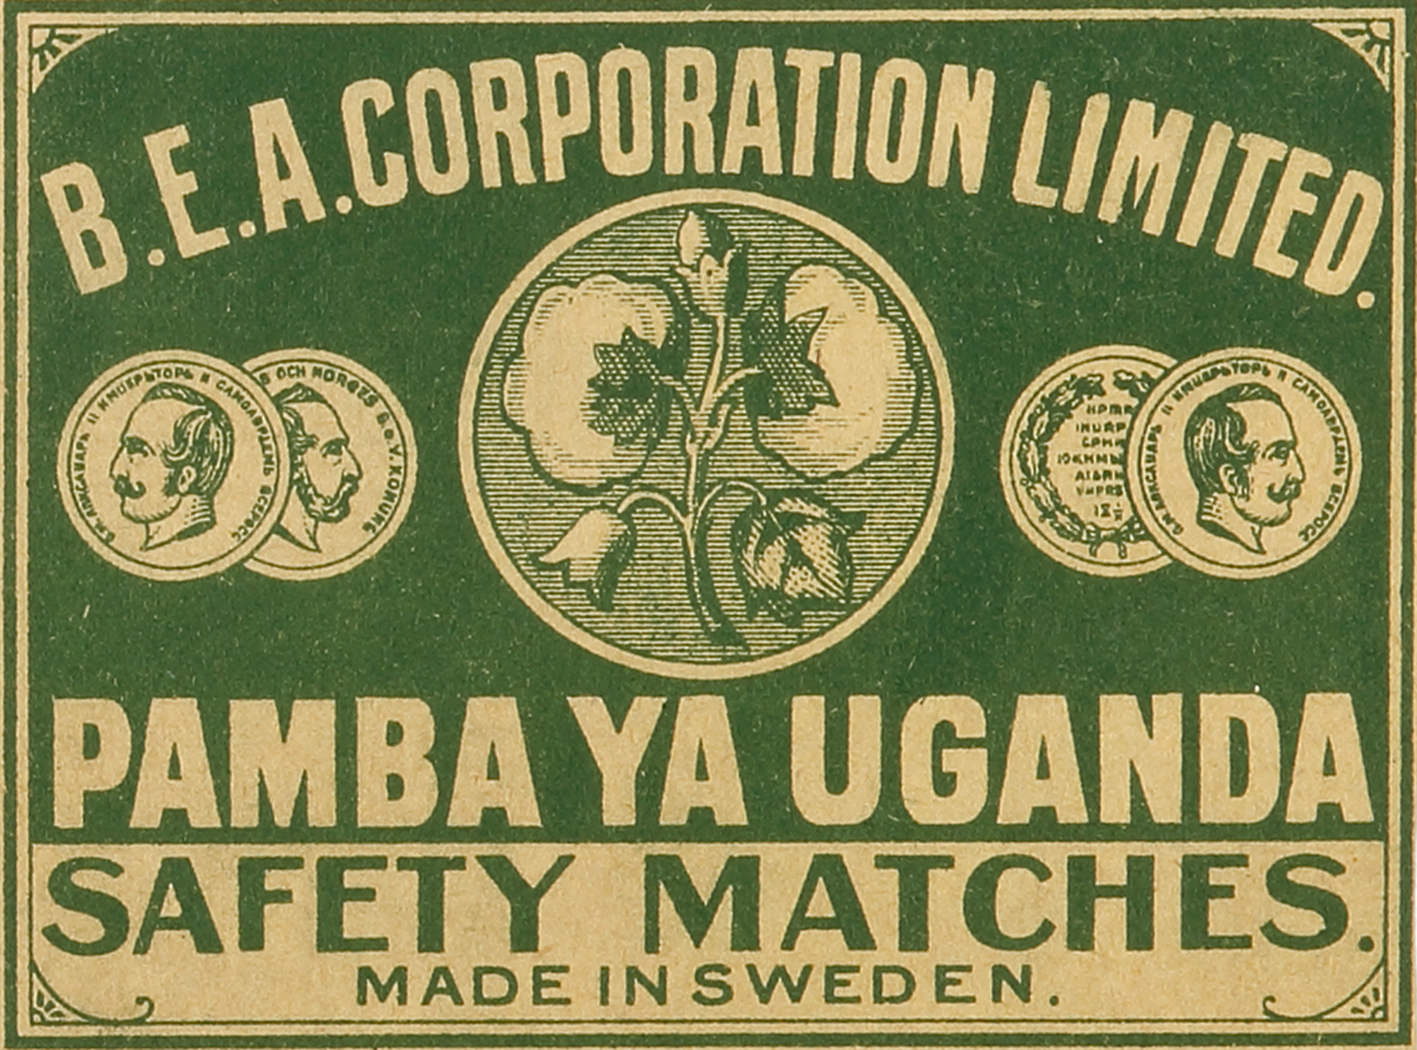 B.E.A. Corporation Limited. Pamba Ya Uganda. - Antique Print from 1900